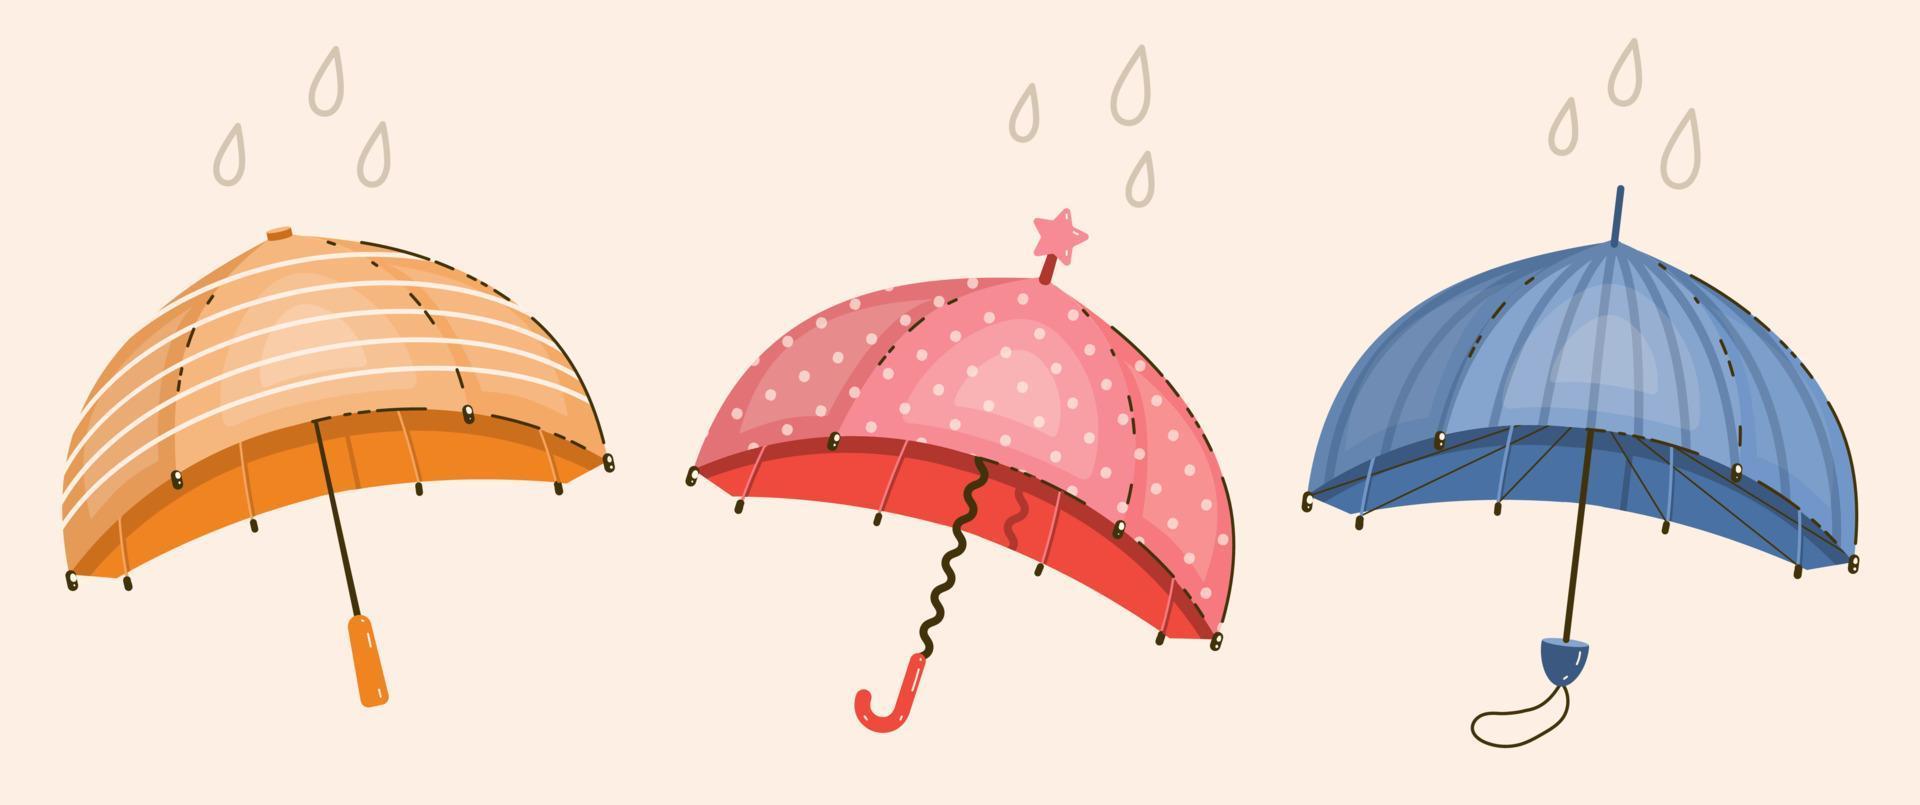 variações guarda-chuvas elegantes coloridos em estilo cartoon plana. ilustração vetorial isolada vetor